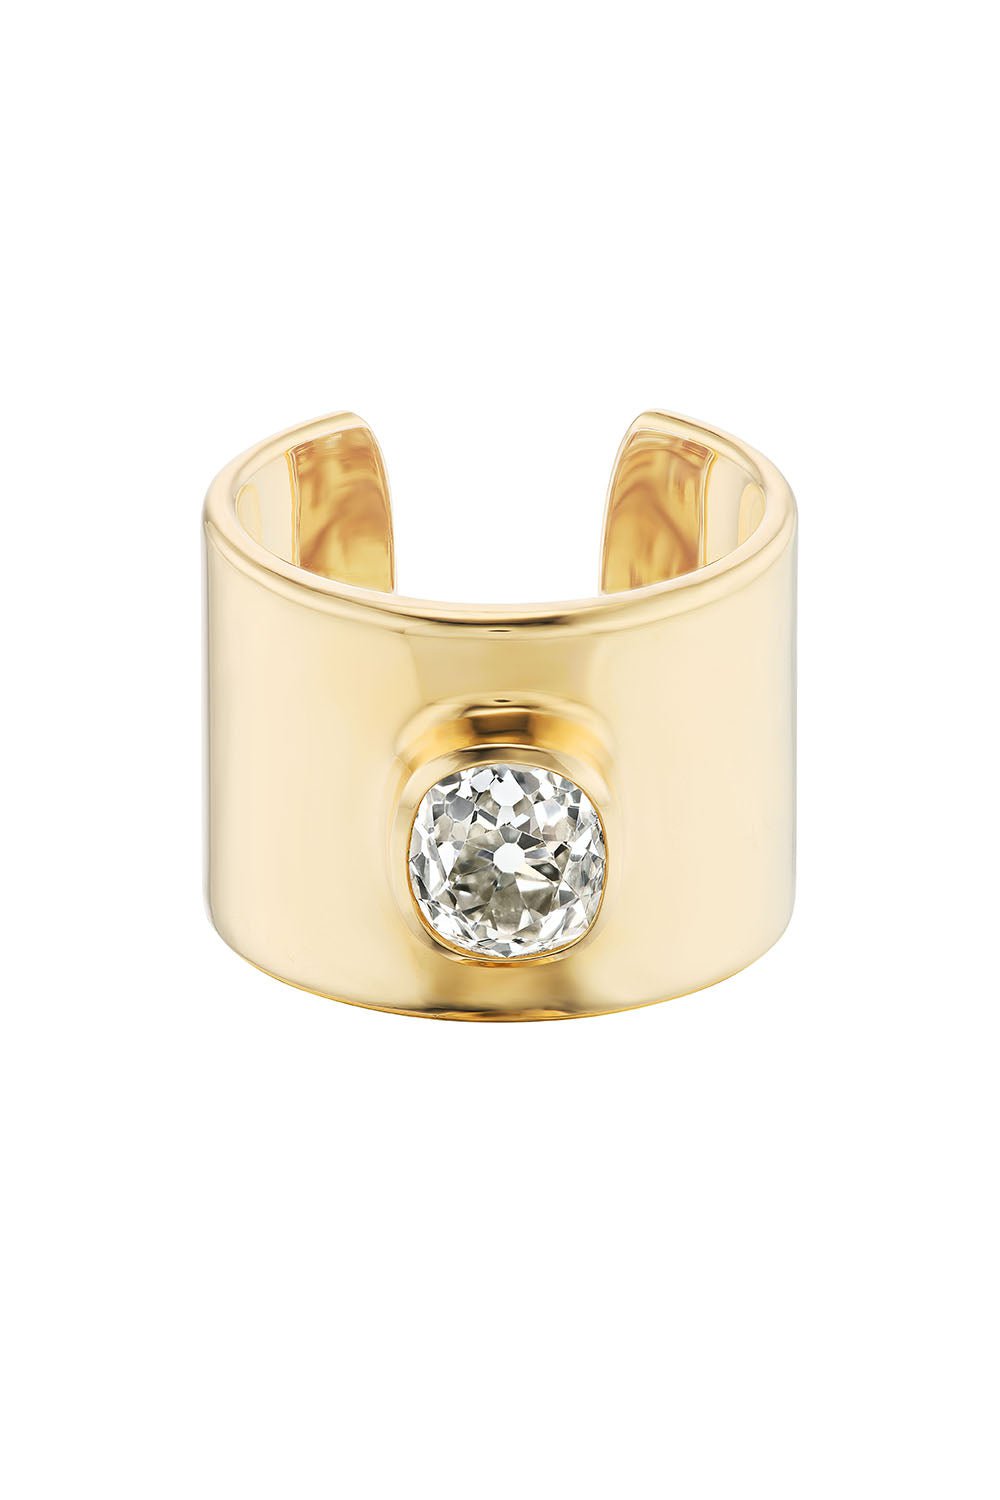 UNIFORM OBJECT-Diamond Cuff Ring-YELLOW GOLD